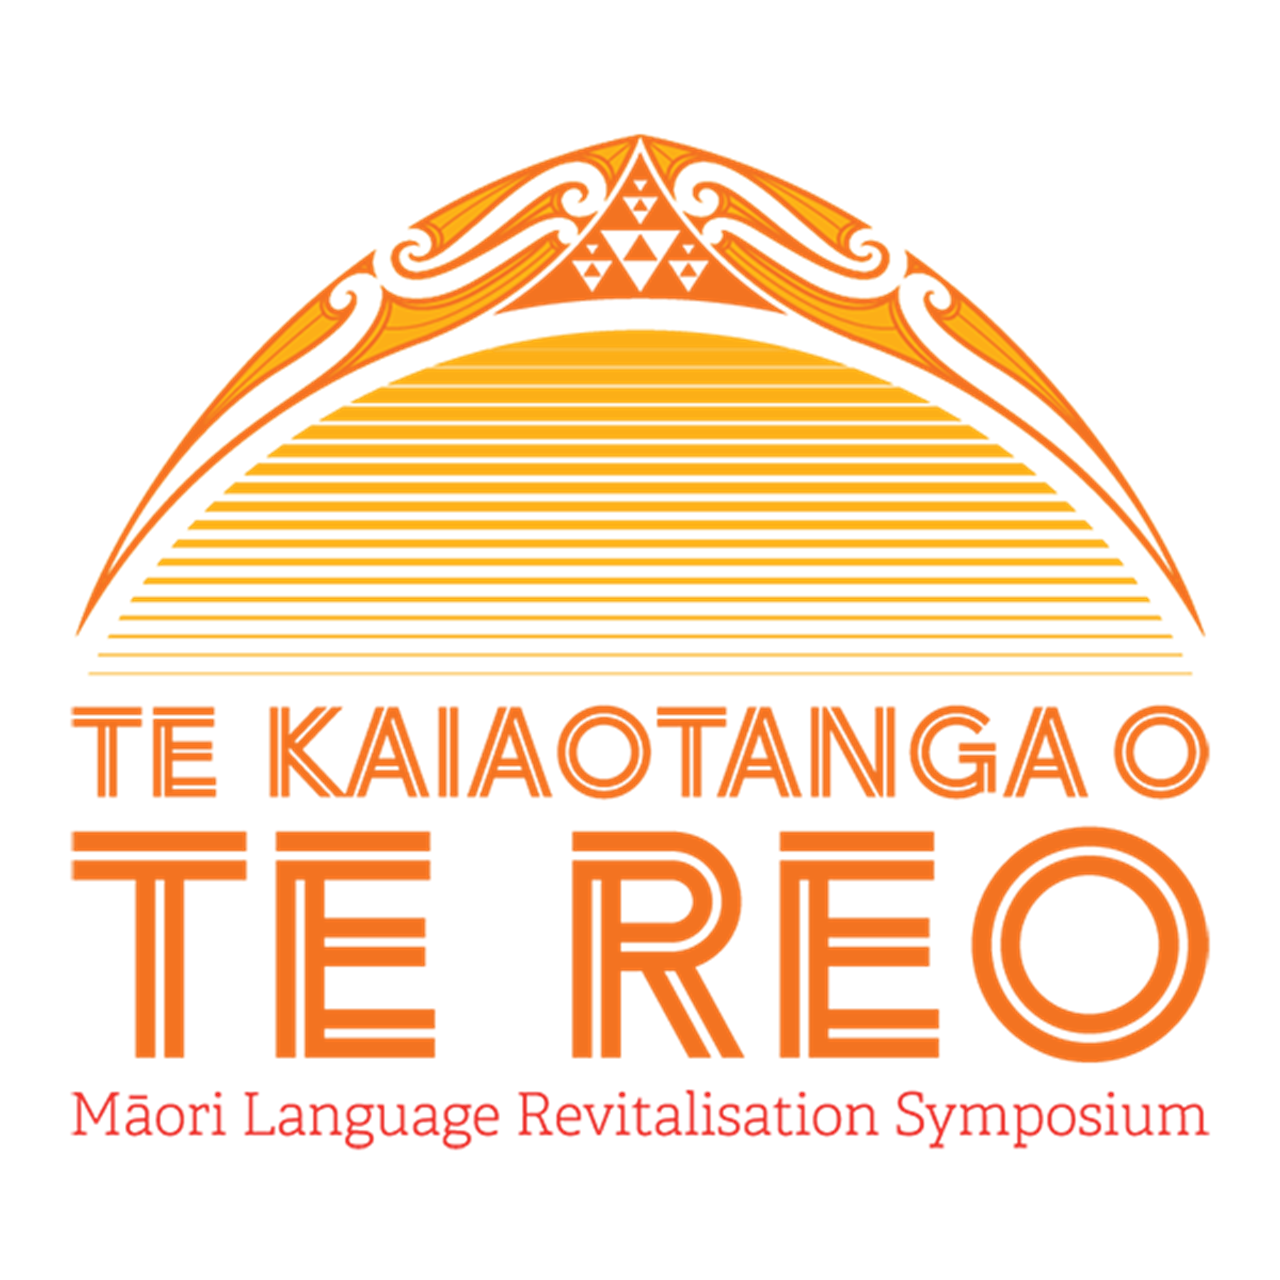 The event is being hosted by Ngāti Apa ki te Rā Tō